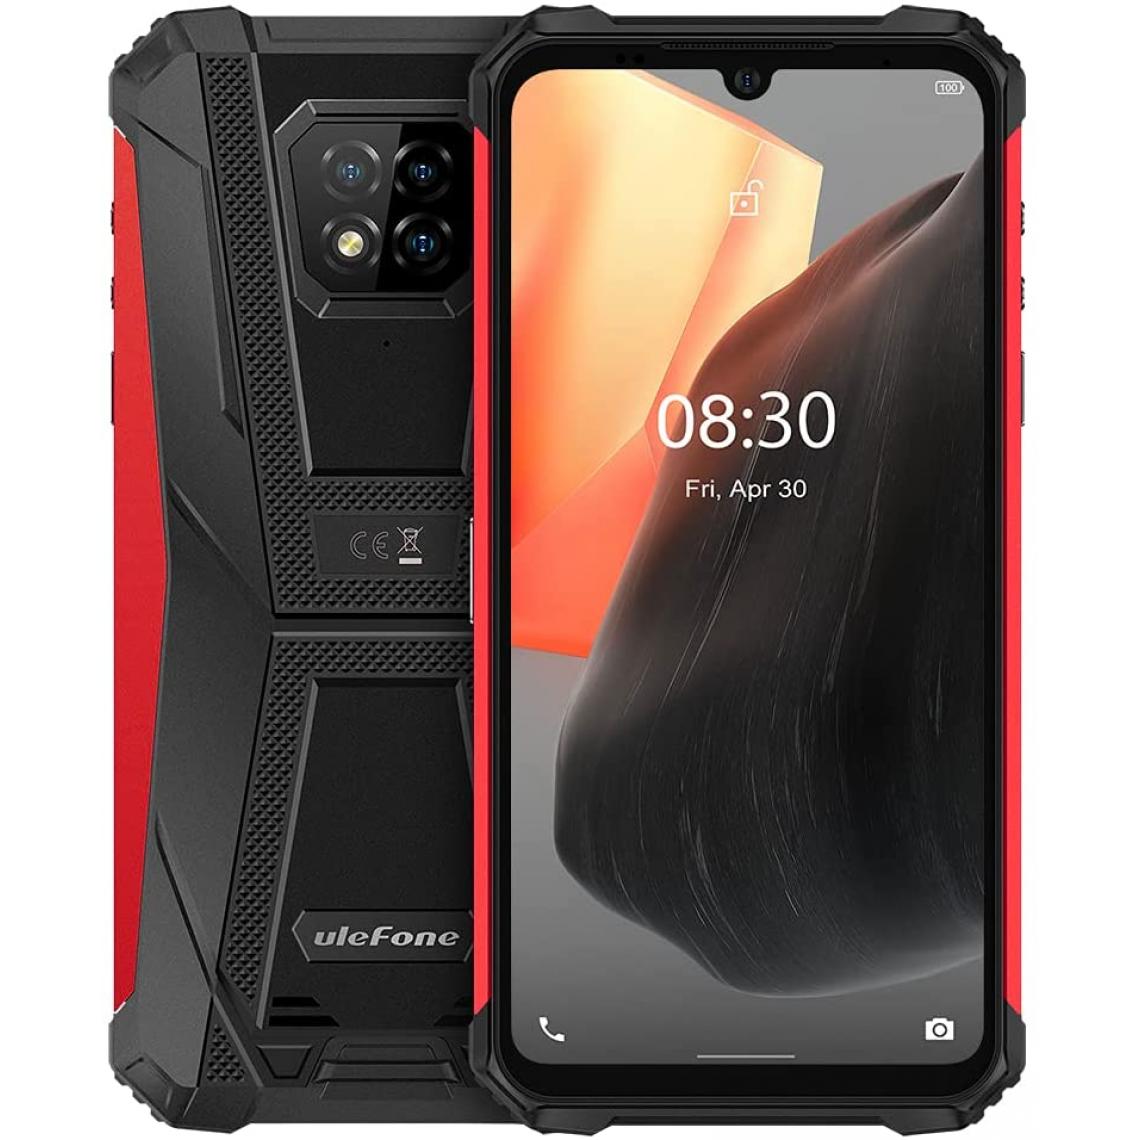 Universal - Ulefone Armor 8 pro Android 11 Smartphone robuste, 6,1 pouces HD + IP68 imperméable imperméable portable portable déverrouillé, helio P60 6 Go + 128 Go, caméra arrière à triple de 16mp, NFC Dual SIM, empreinte digitale rouge - Smartphone Android